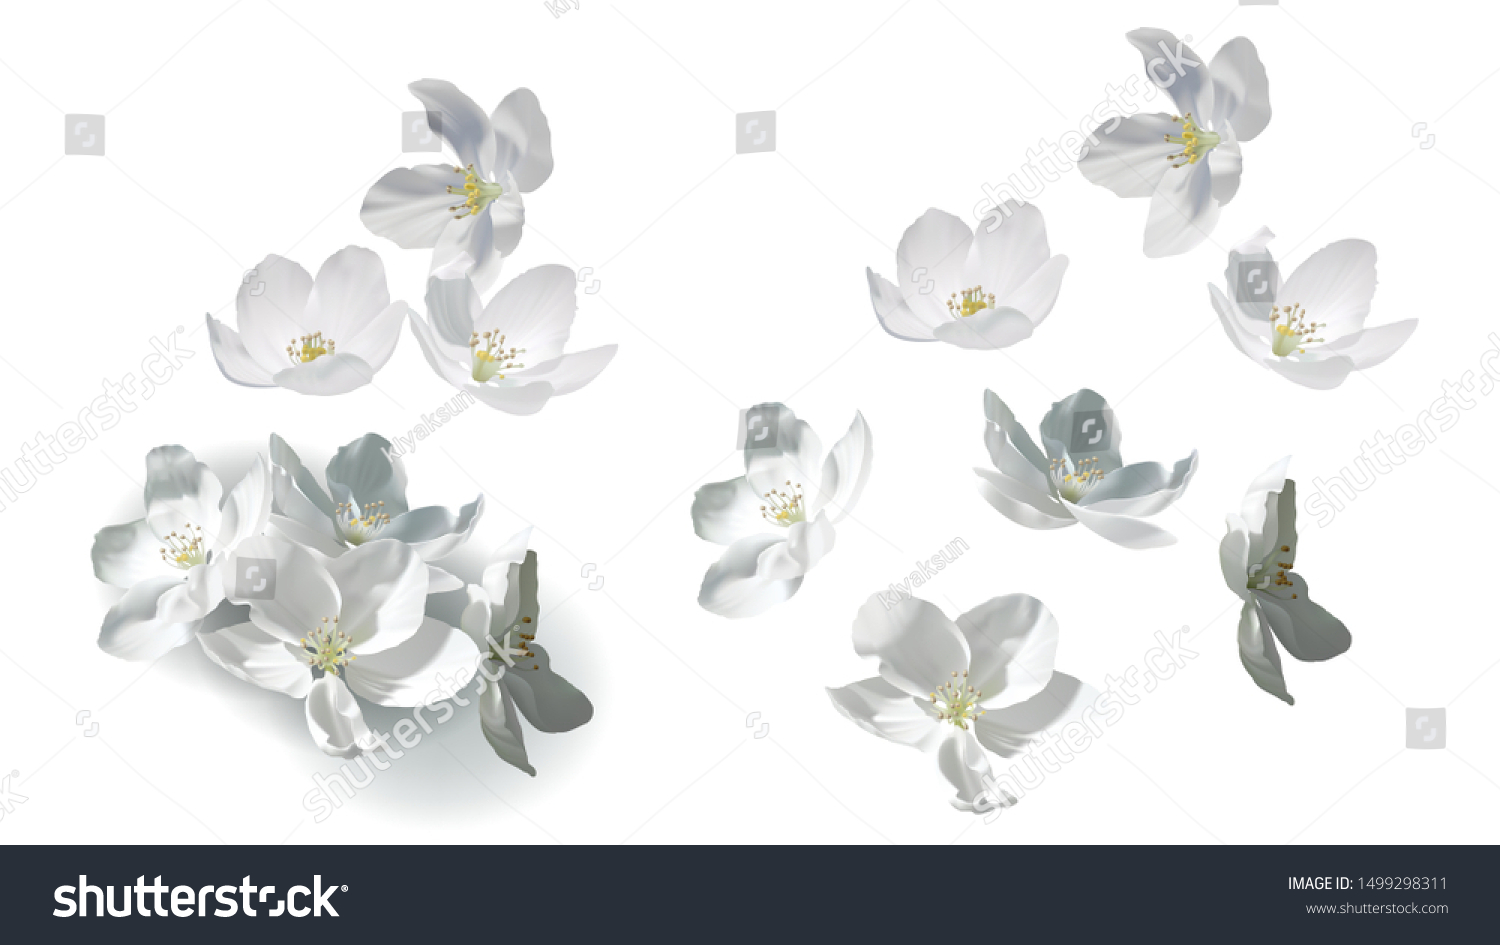 白いジャスミンの花は 完全にリアルなベクターイラストです 白い背景に花が飛び散り 落ち 山になって横たわり 詳細な黄色の雄蘂と影 デザインエレメントのセット のベクター画像素材 ロイヤリティフリー